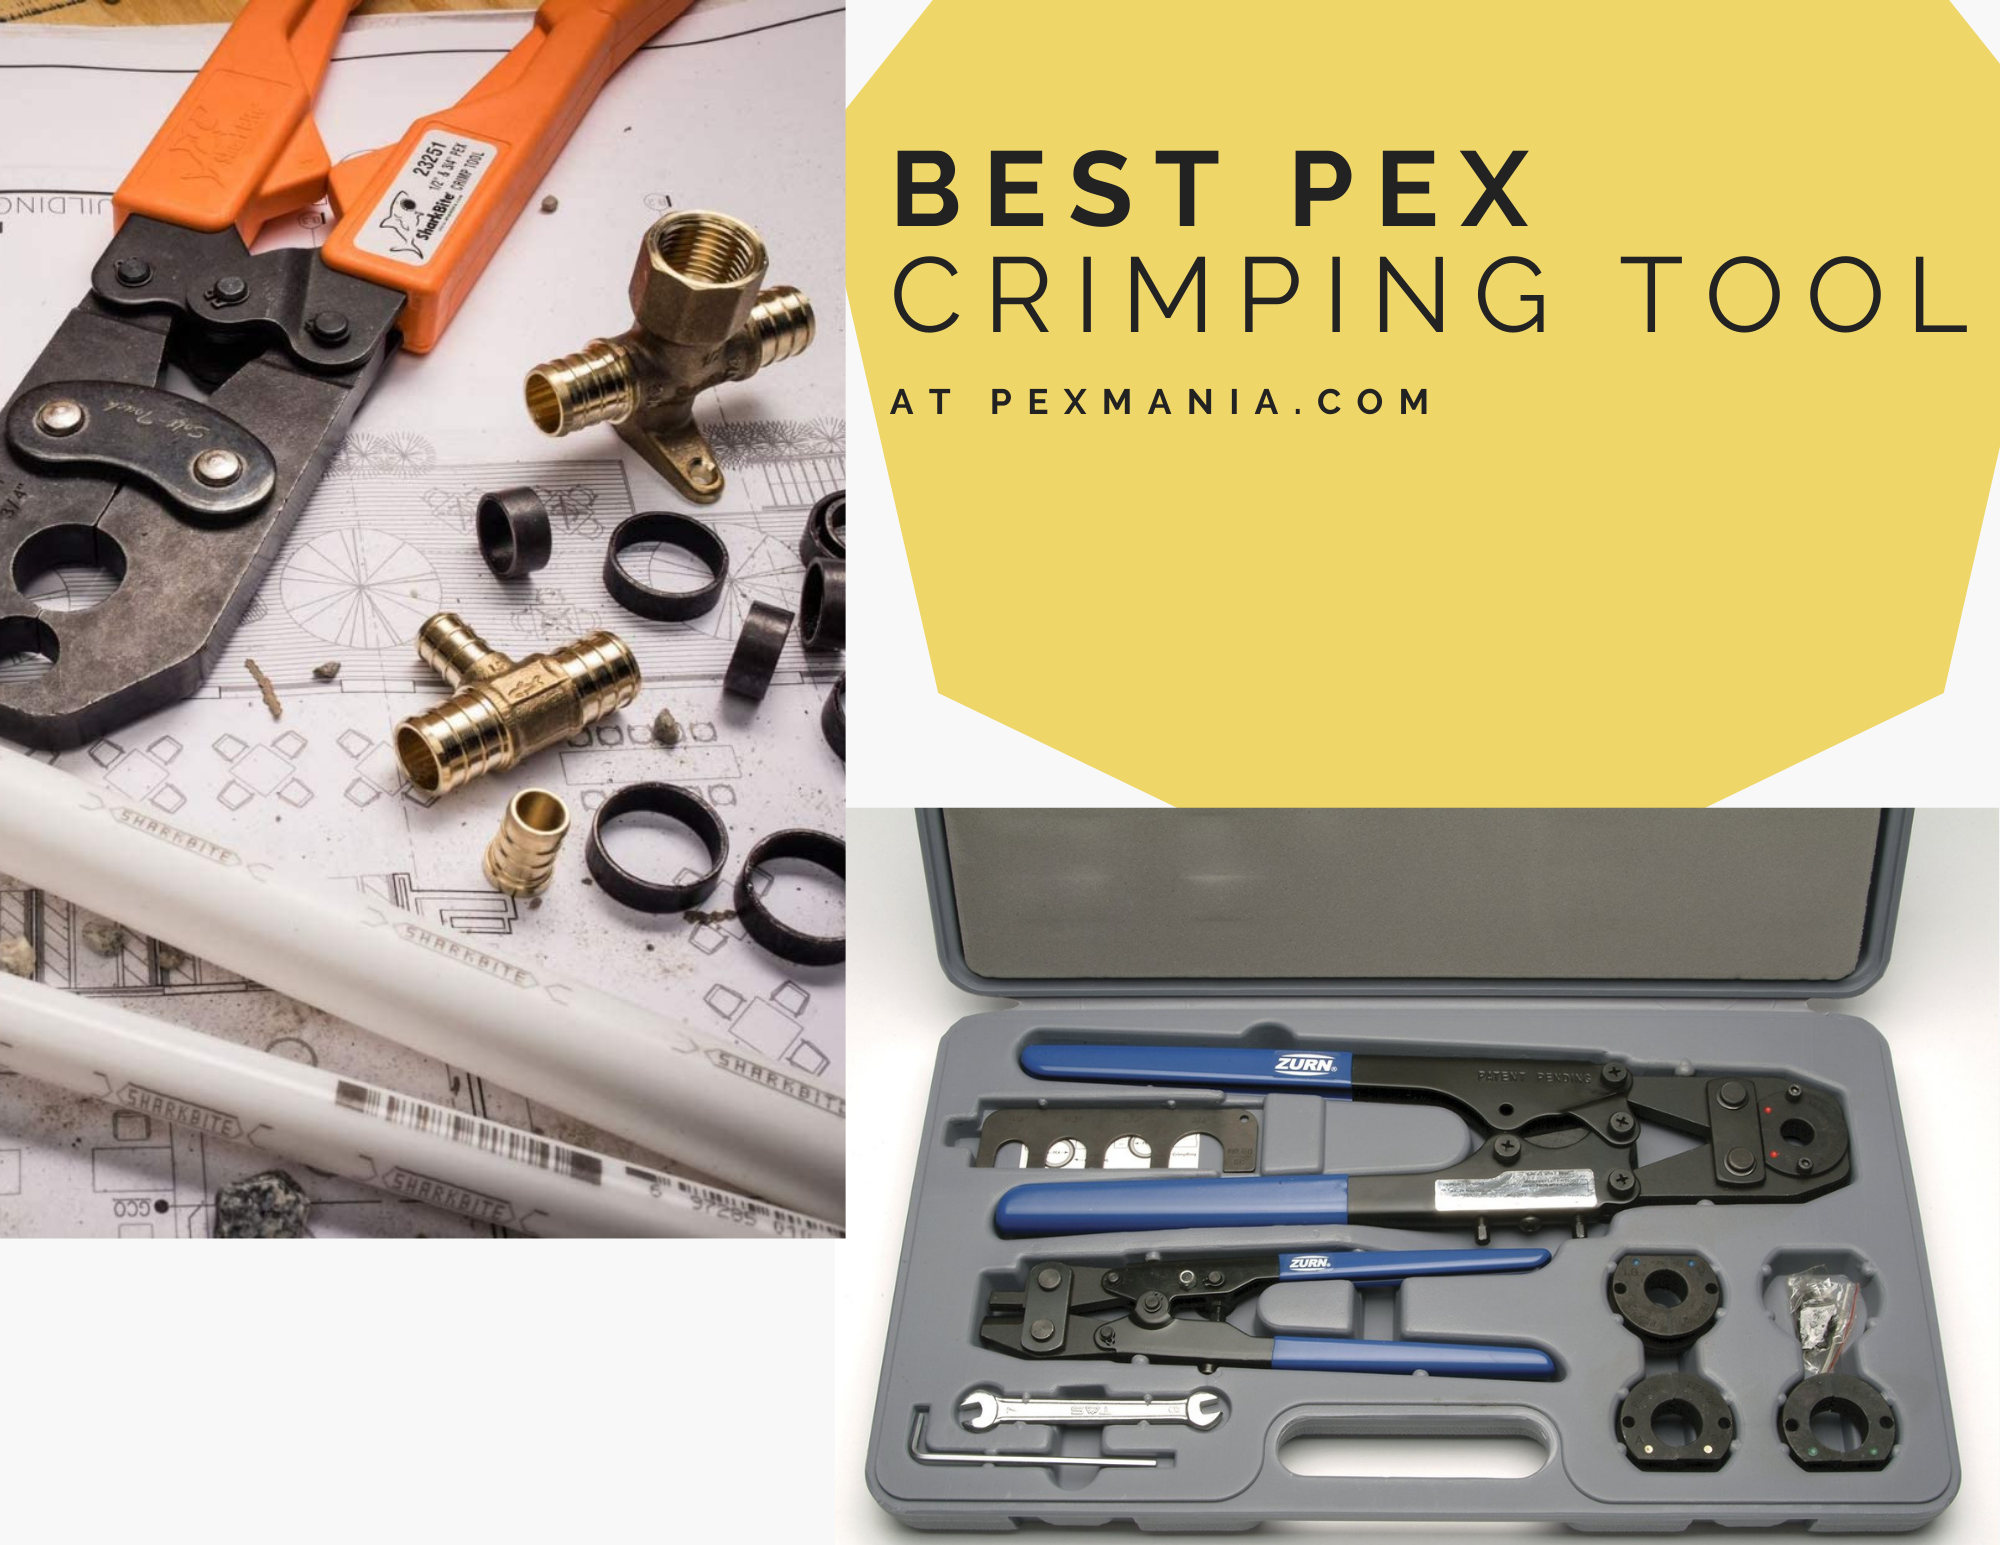 Best PEX Crimping tool